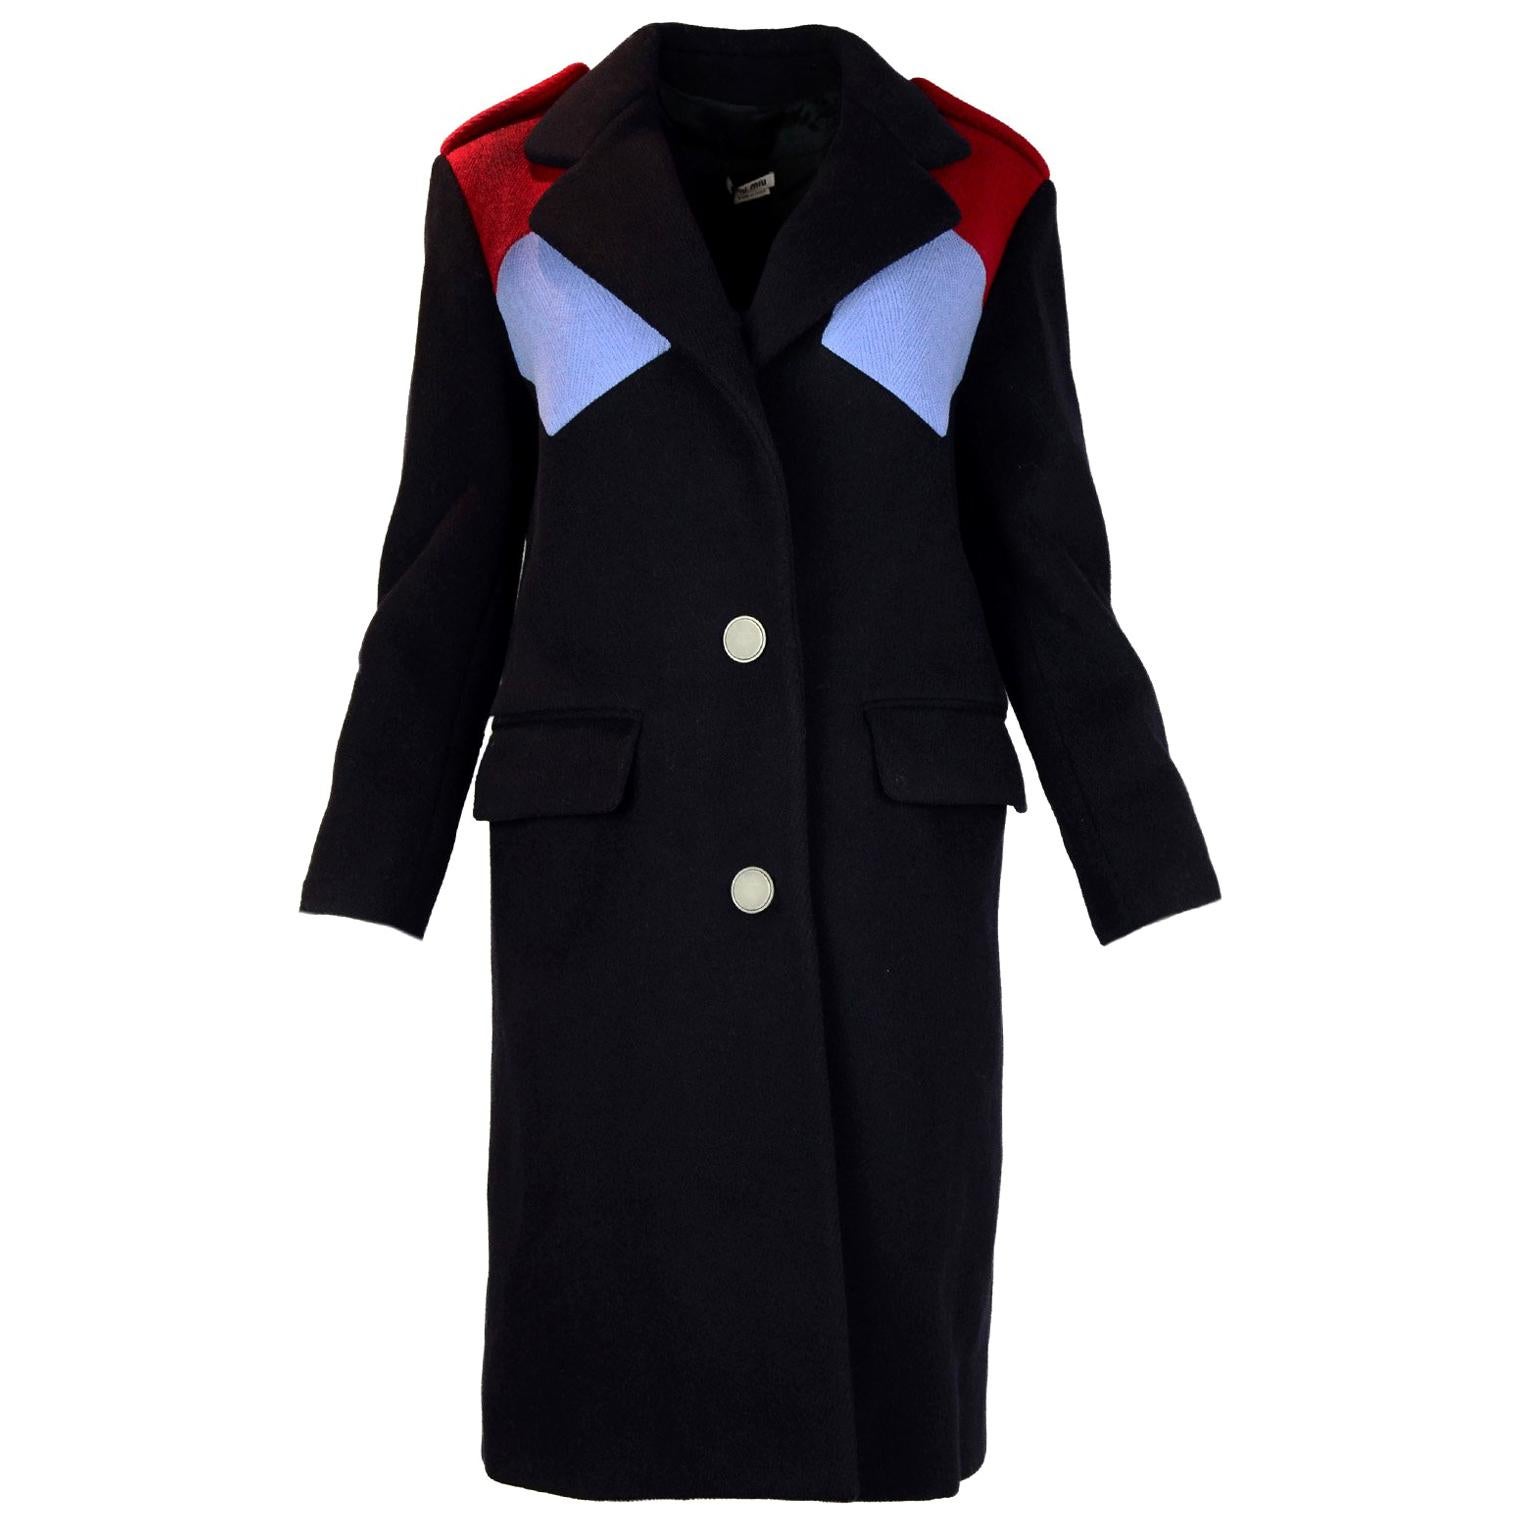 Miu Miu Navy/Light Blue & Red Color Block Wool Coat sz IT36/US0